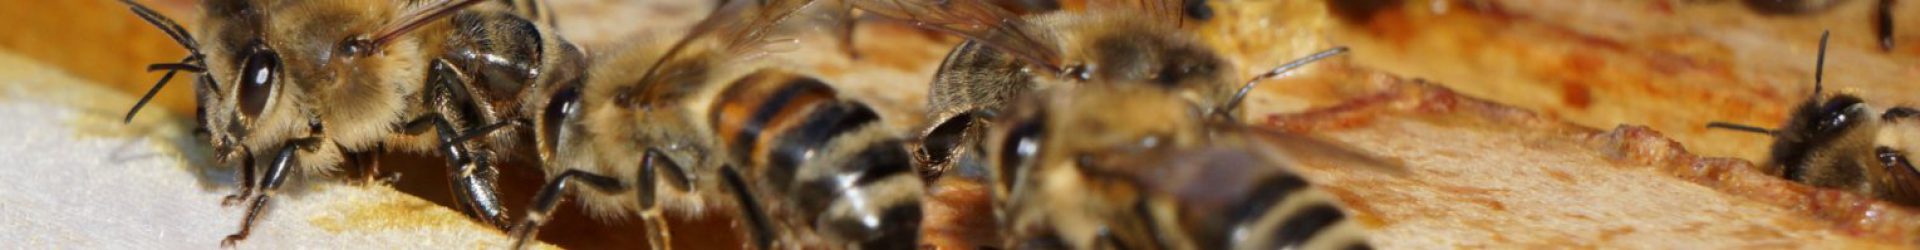 Faszination Insekten: Das unglaubliche Superhirn der Biene – DIE WELT